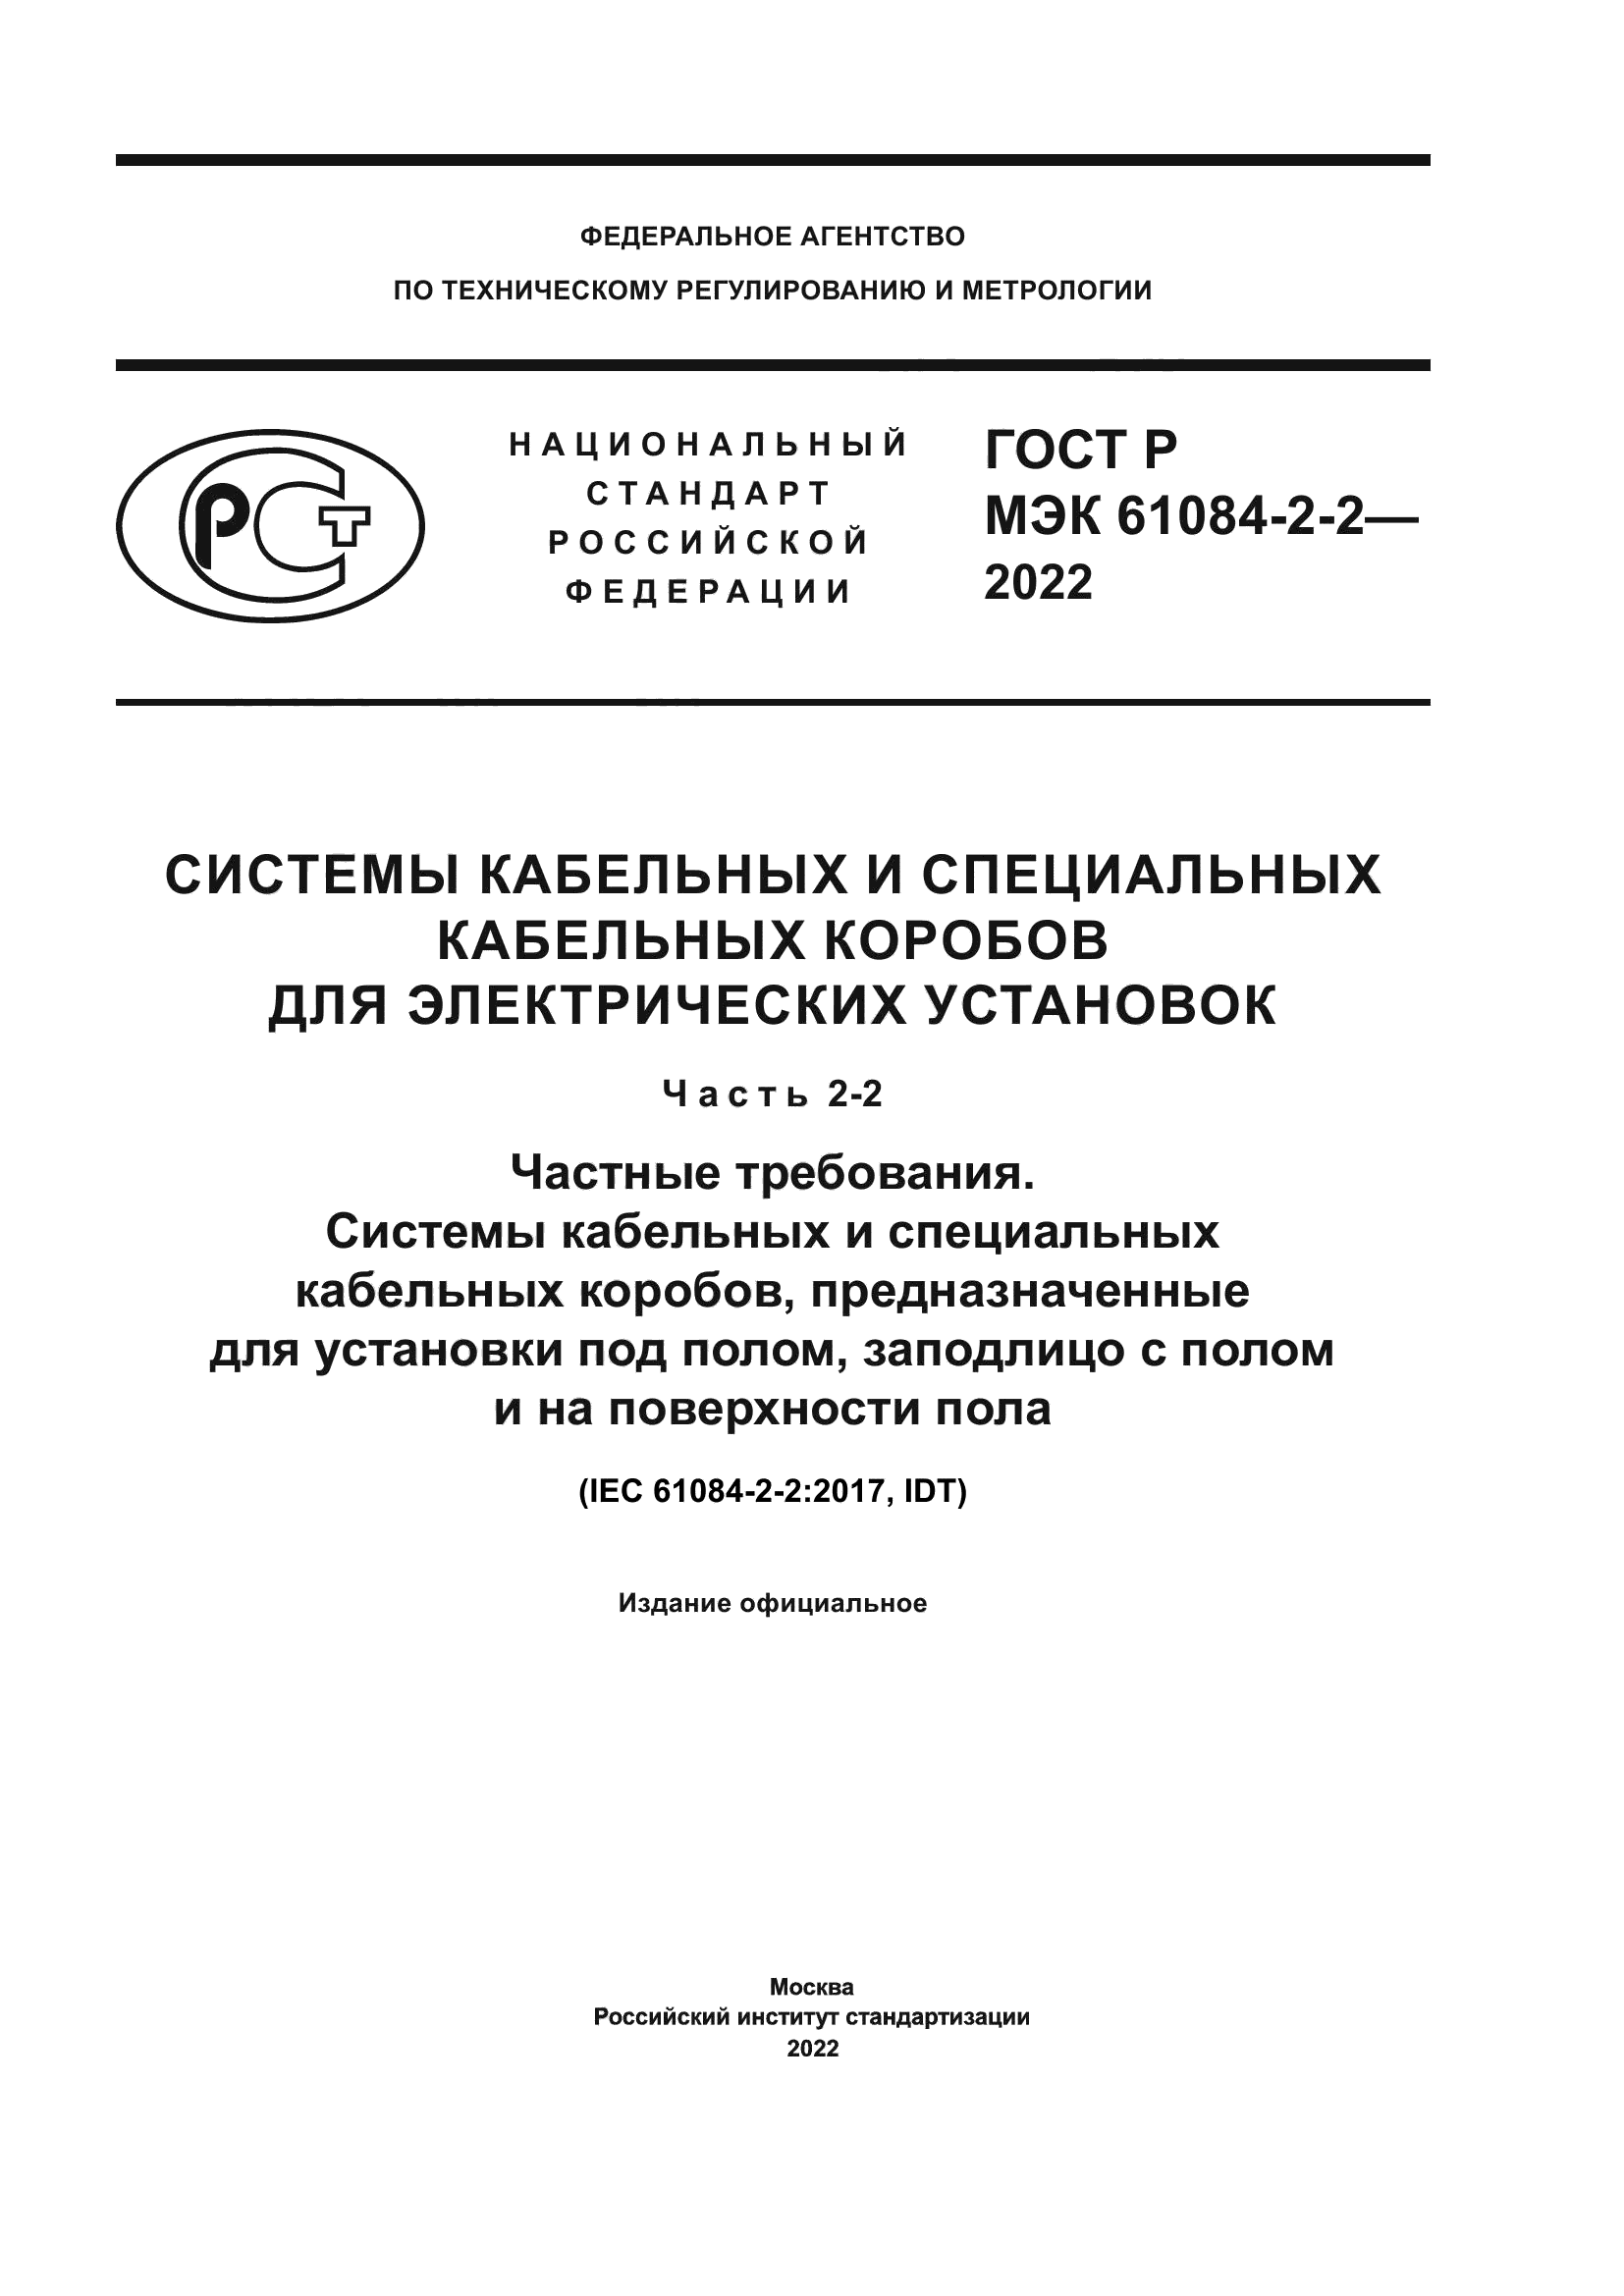 ГОСТ Р МЭК 61084-2-2-2022